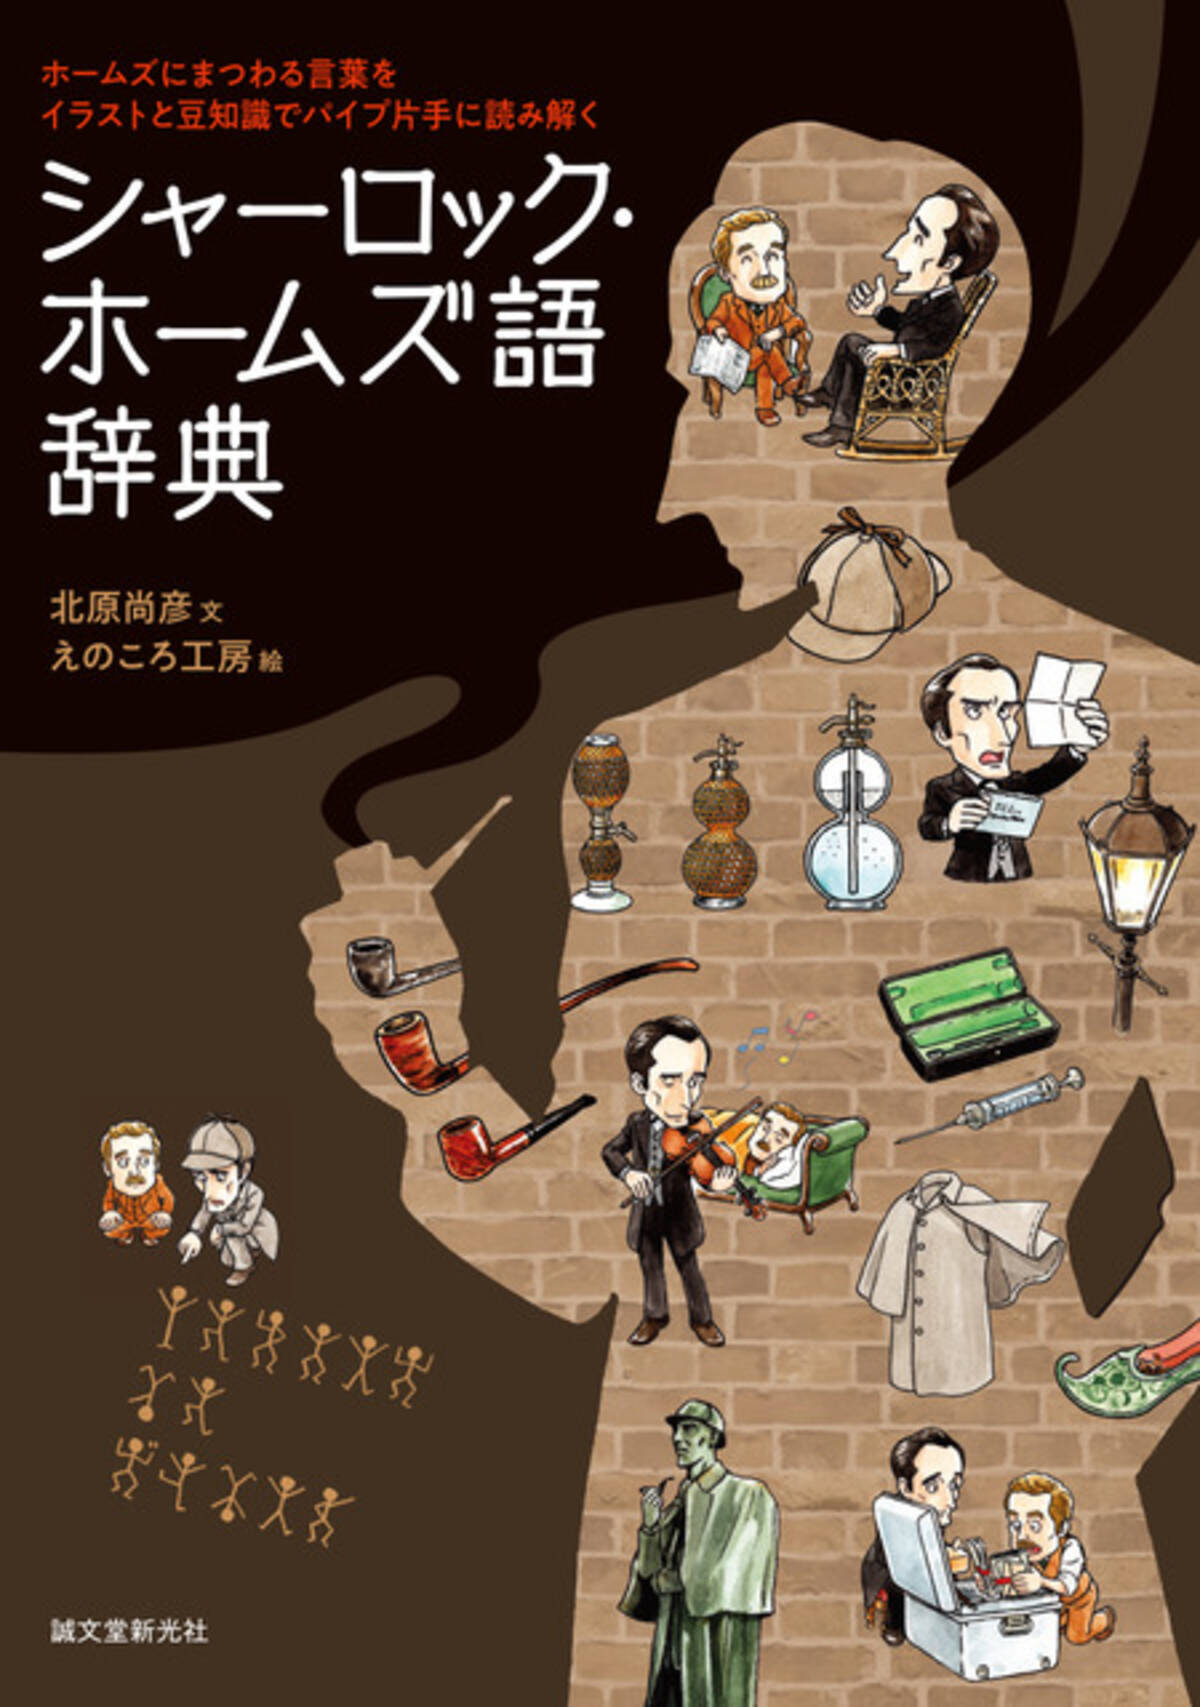 コナン 歌舞伎町シャーロック 探偵アニメファンは必見 ホームズの 全て に迫る一冊が発売 19年11月23日 エキサイトニュース